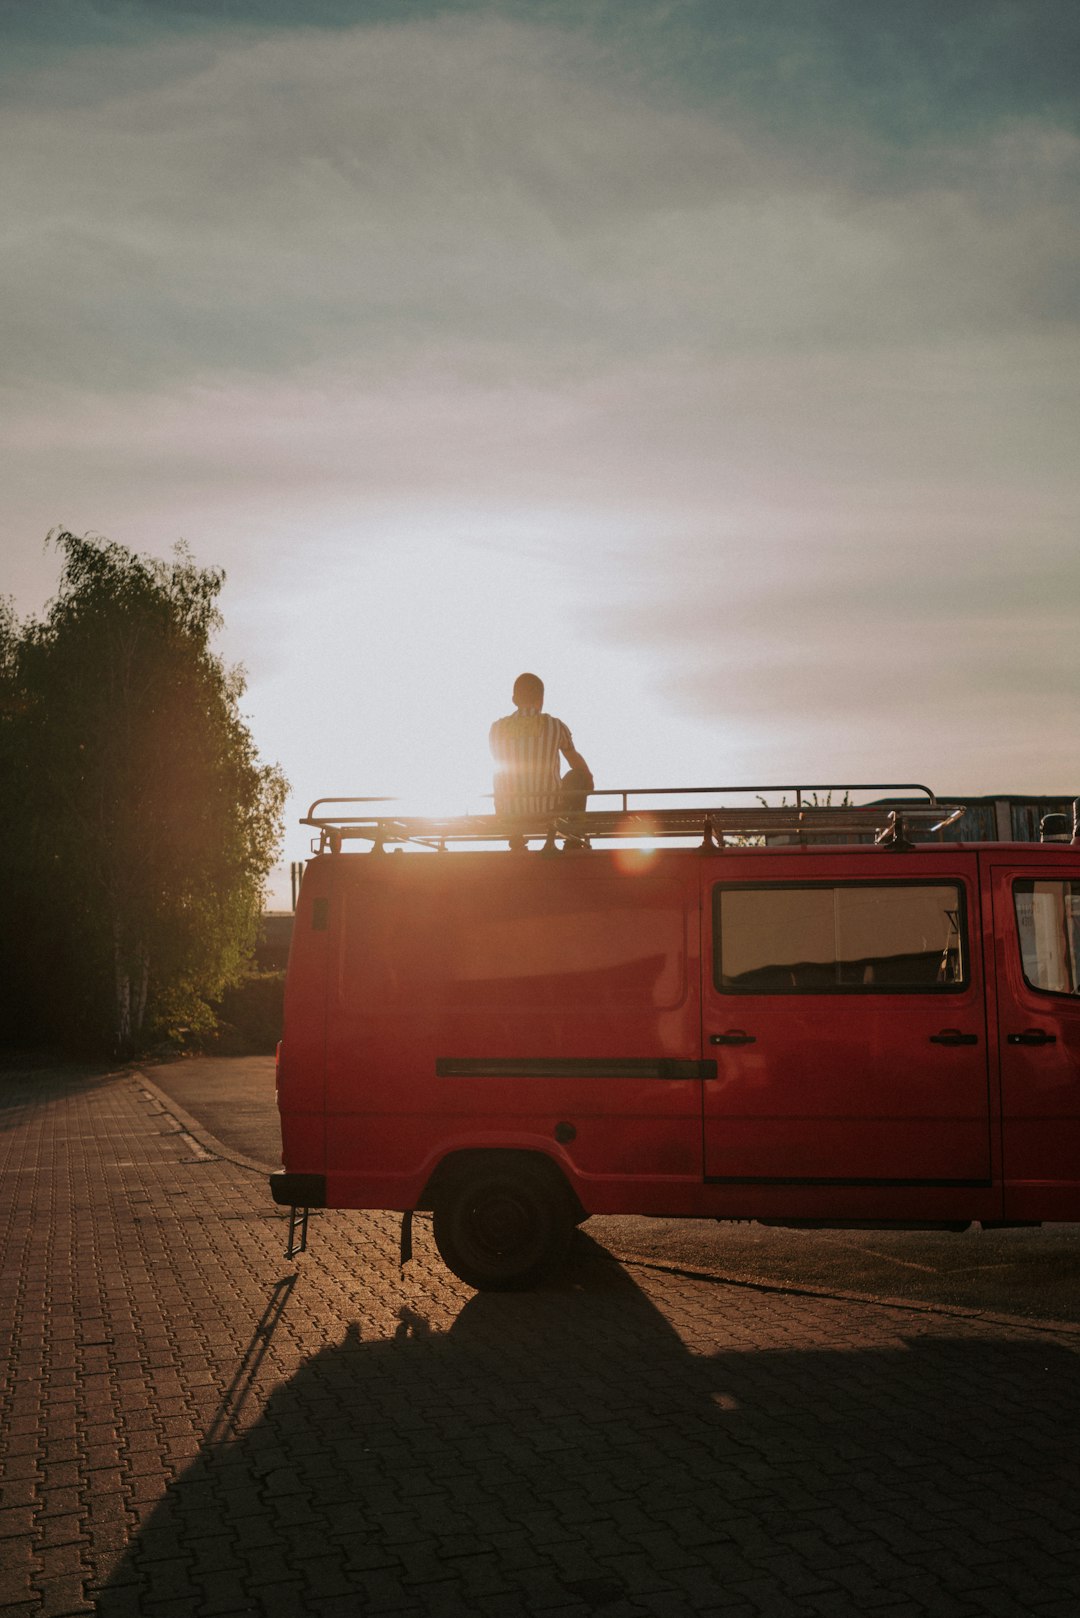 man in white shirt sitting on red van during daytime